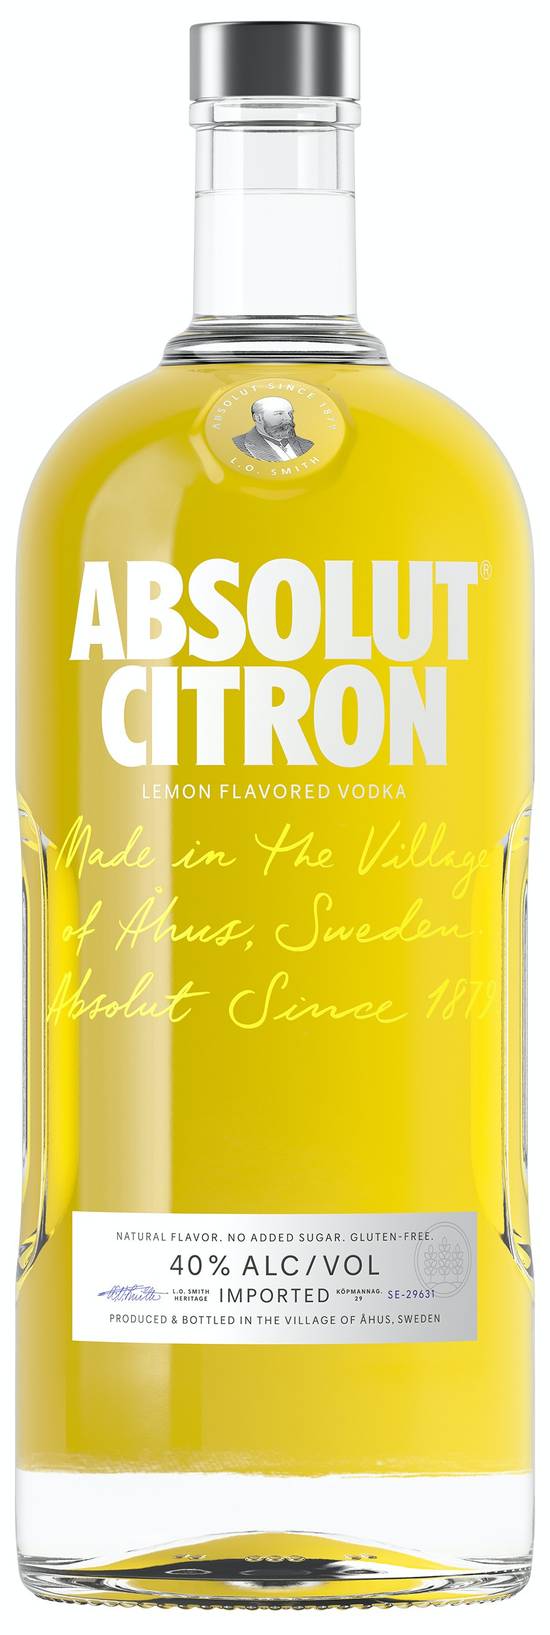 Absolut Citron Lemon Flavored Vodka (1.75 L)